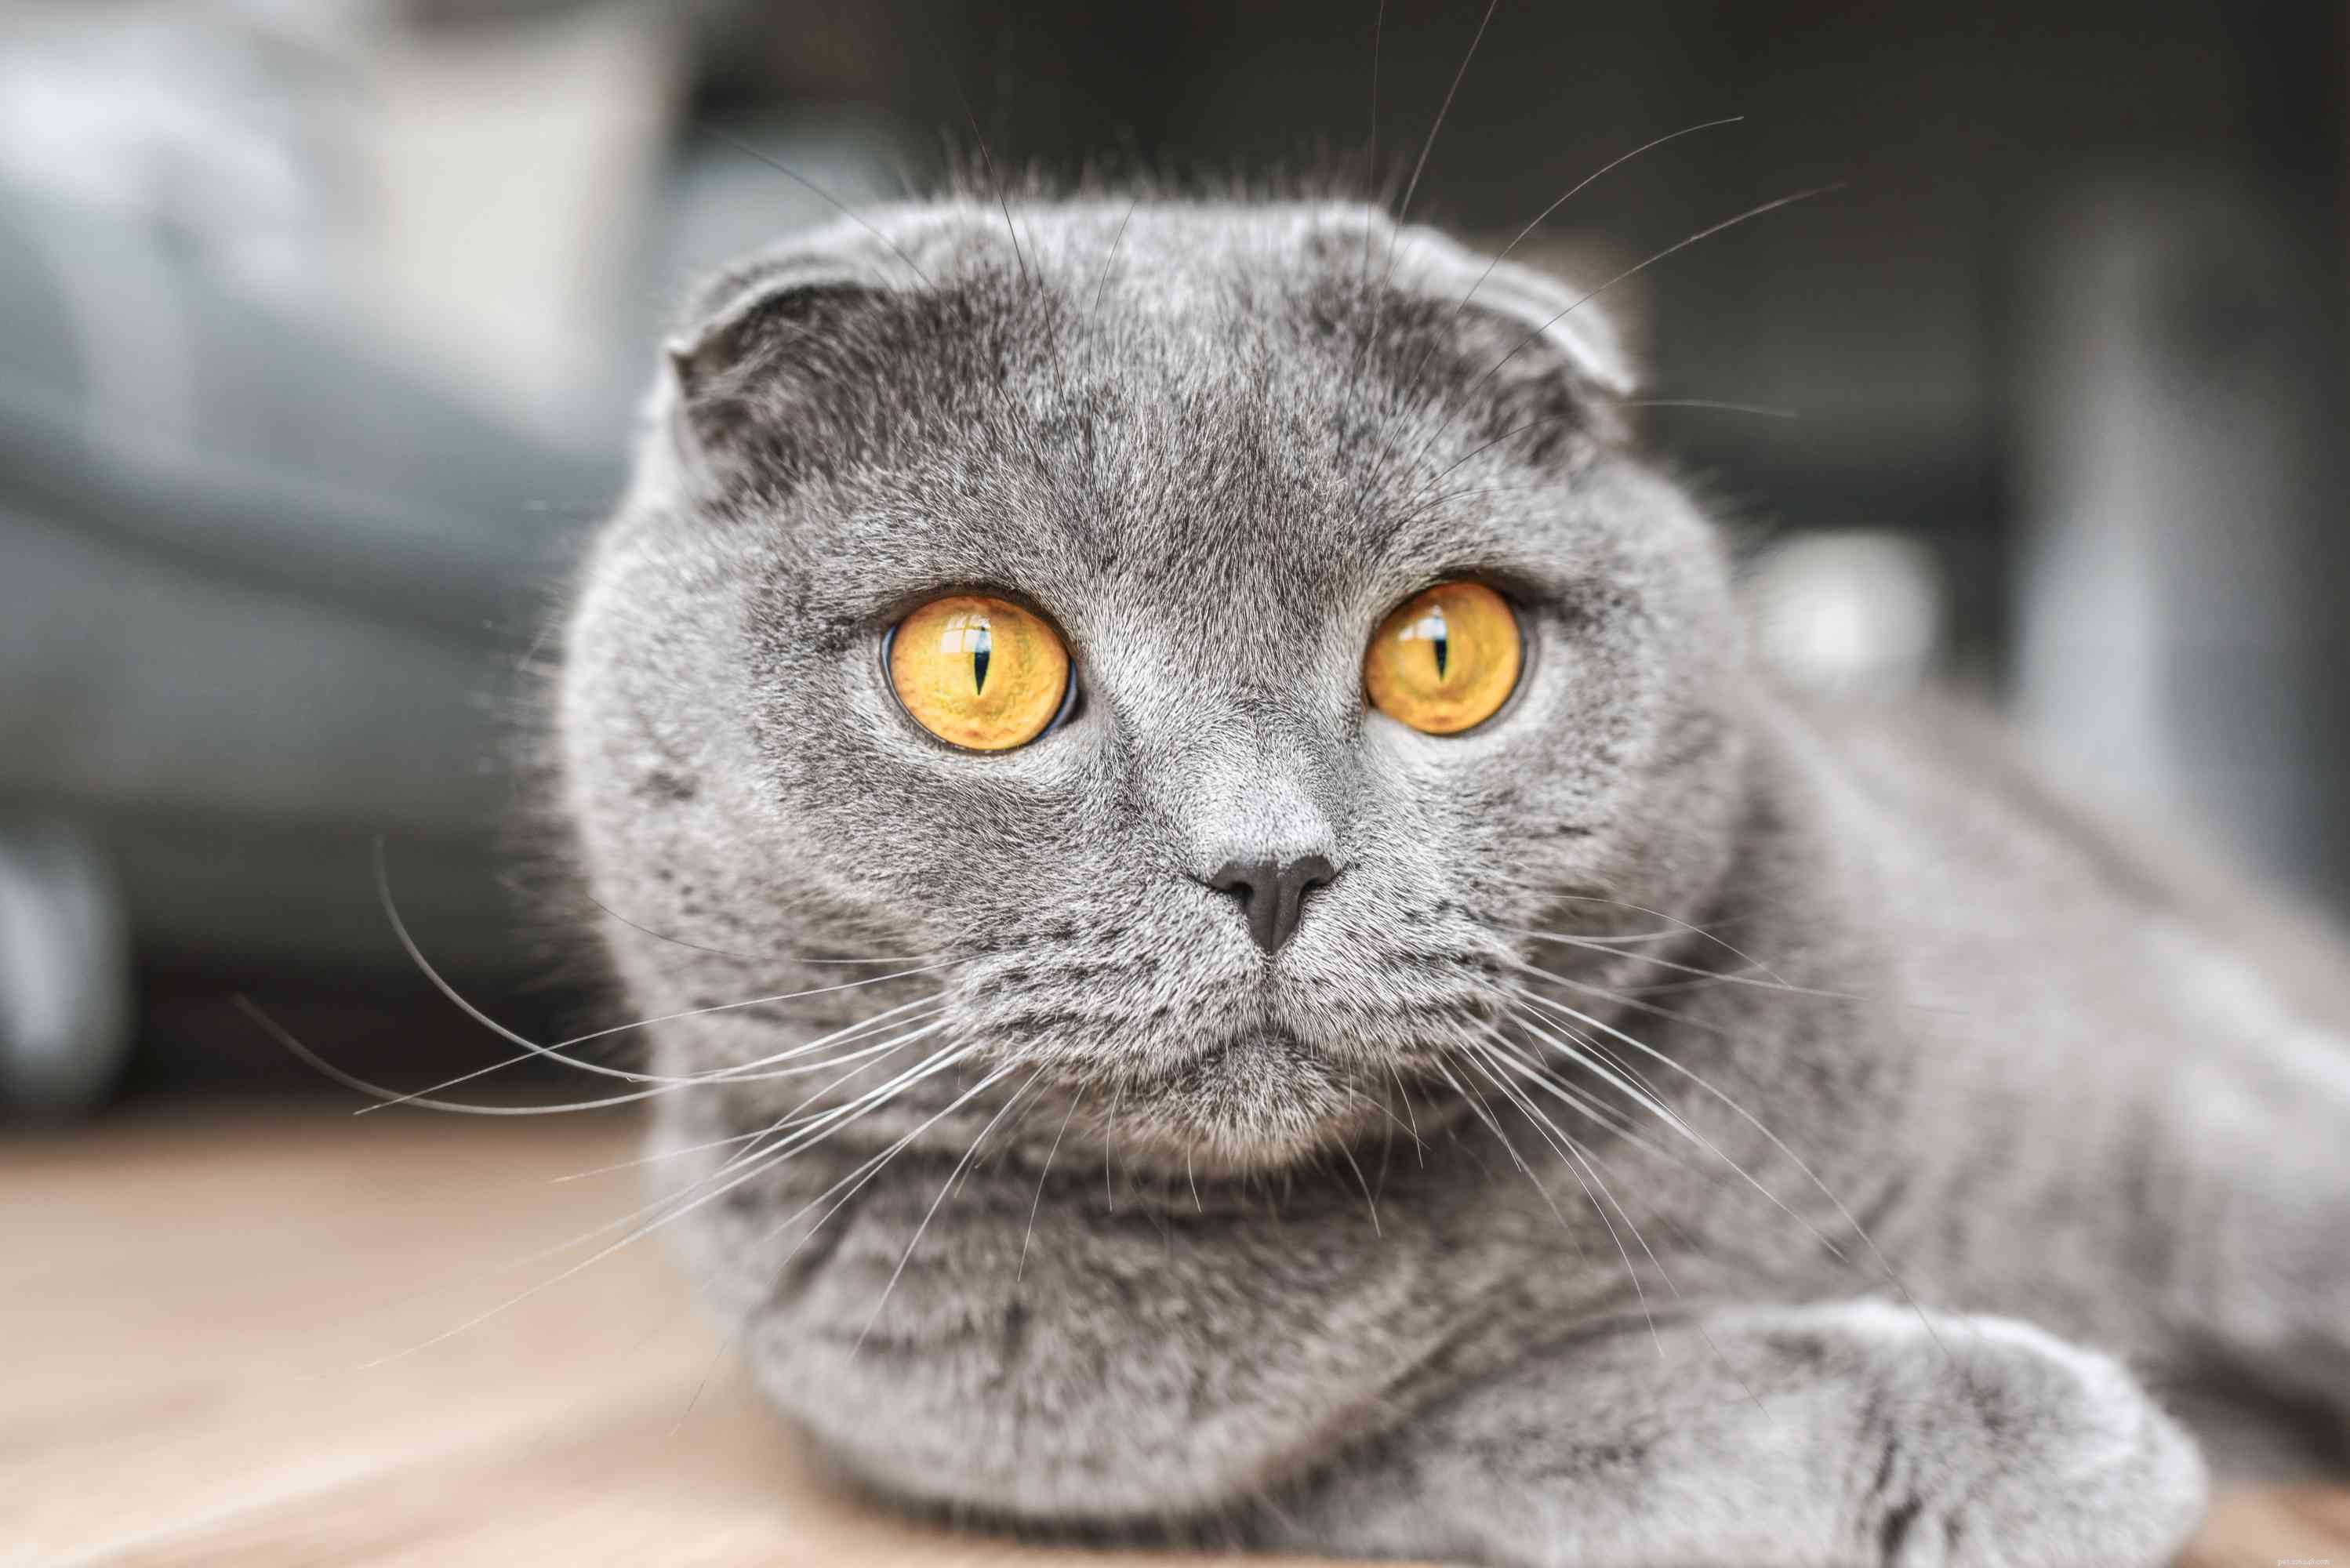 Шотландская вислоухая кошка:Профиль породы кошек